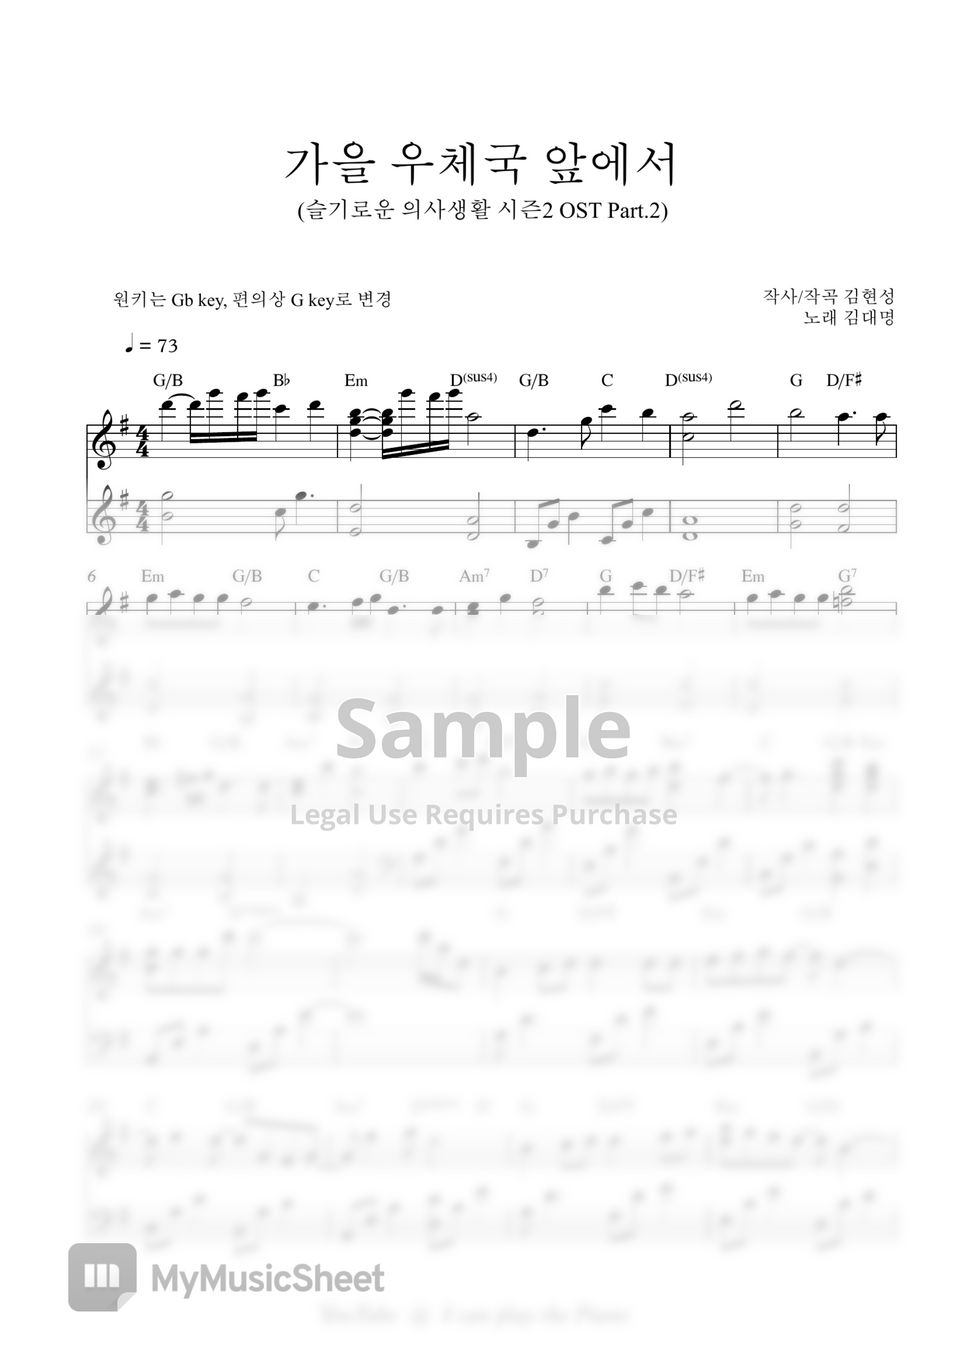 김대명Kim Dae Myung) - 가을 우체국 앞에서 (슬기로운 의사생활 시즌2 OST Part 2) / In front of the Post Office in Autumn(Playlist Season 2 OST) (Easy Version) by I can play the Piano